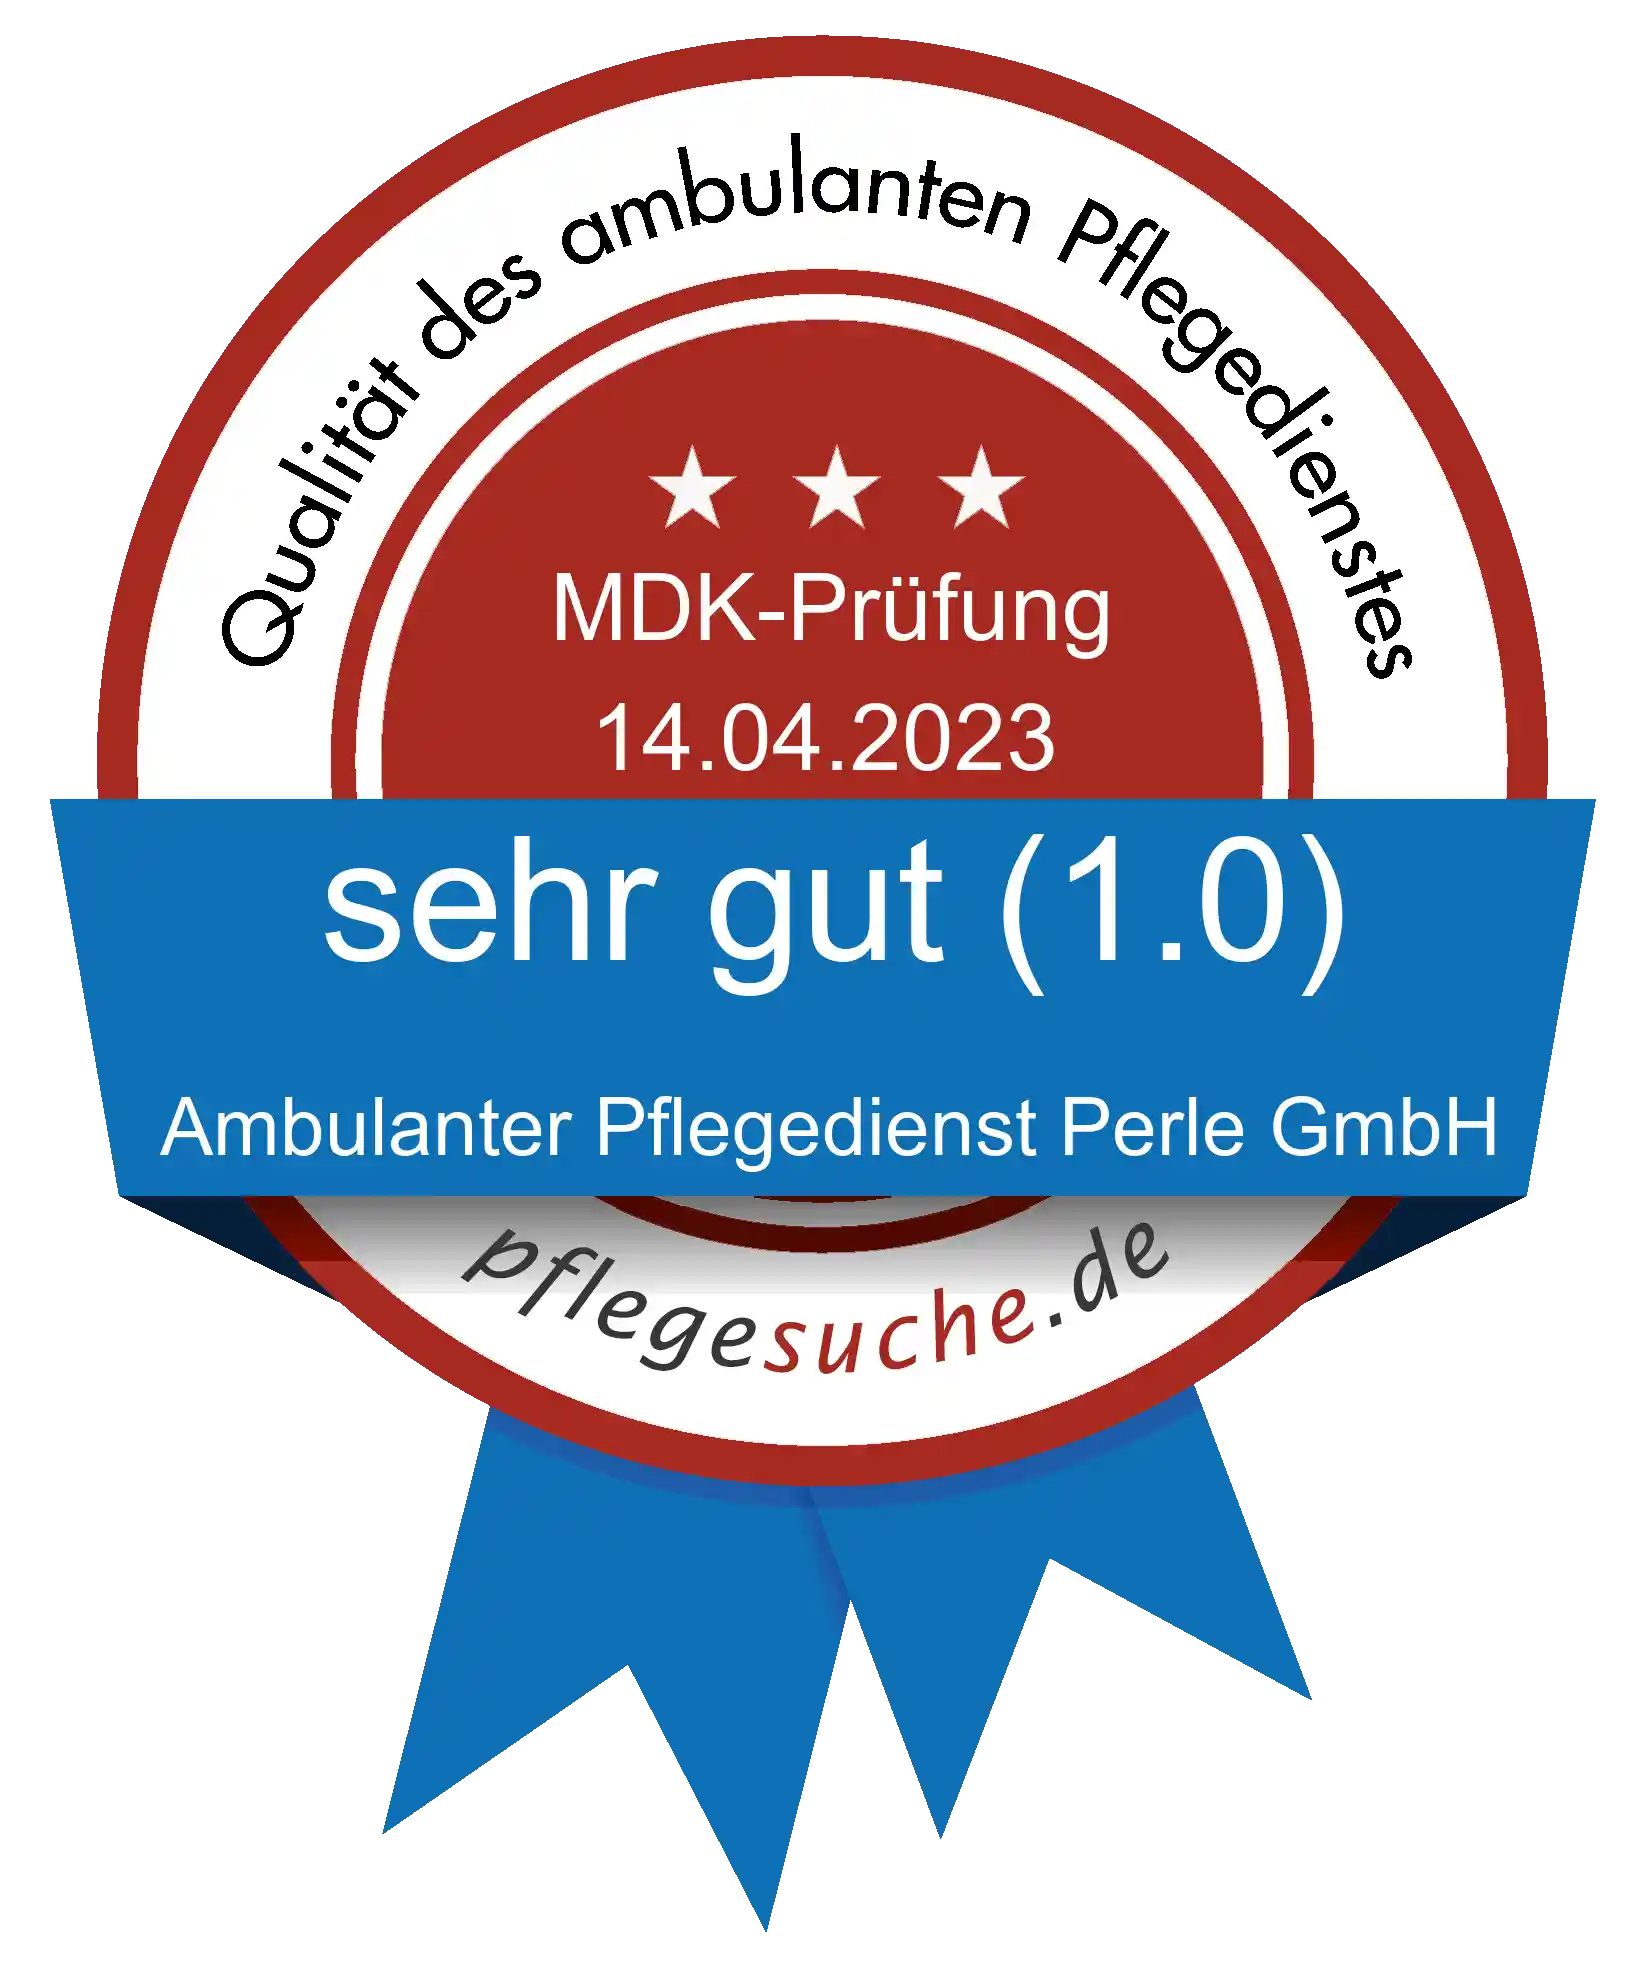 Siegel Benotung: Ambulanter Pflegedienst Perle GmbH